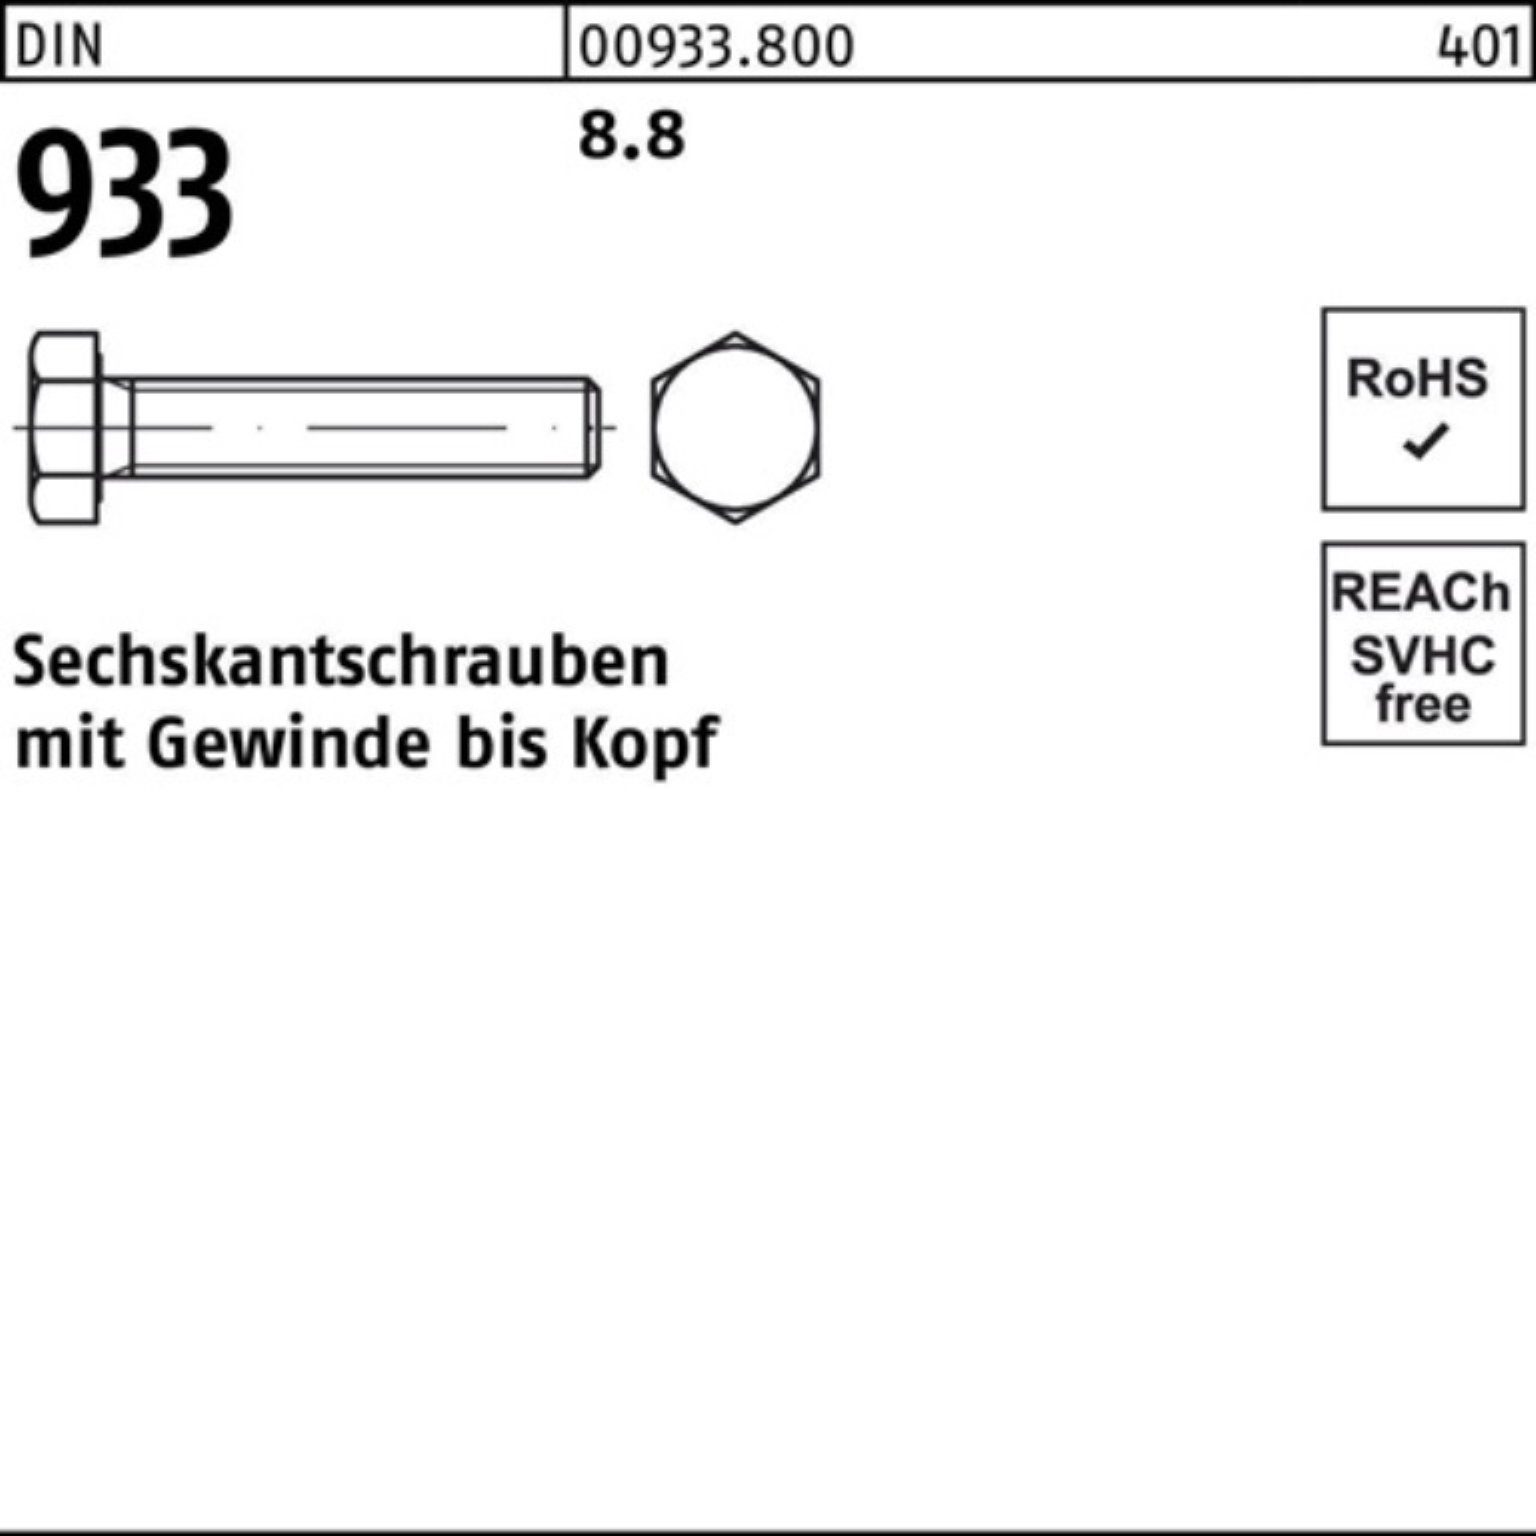 933 Sechskantschraube 40 Sechskantschraube Pack 933 Stück 100 DIN DIN 100er M10x Reyher 8.8 VG